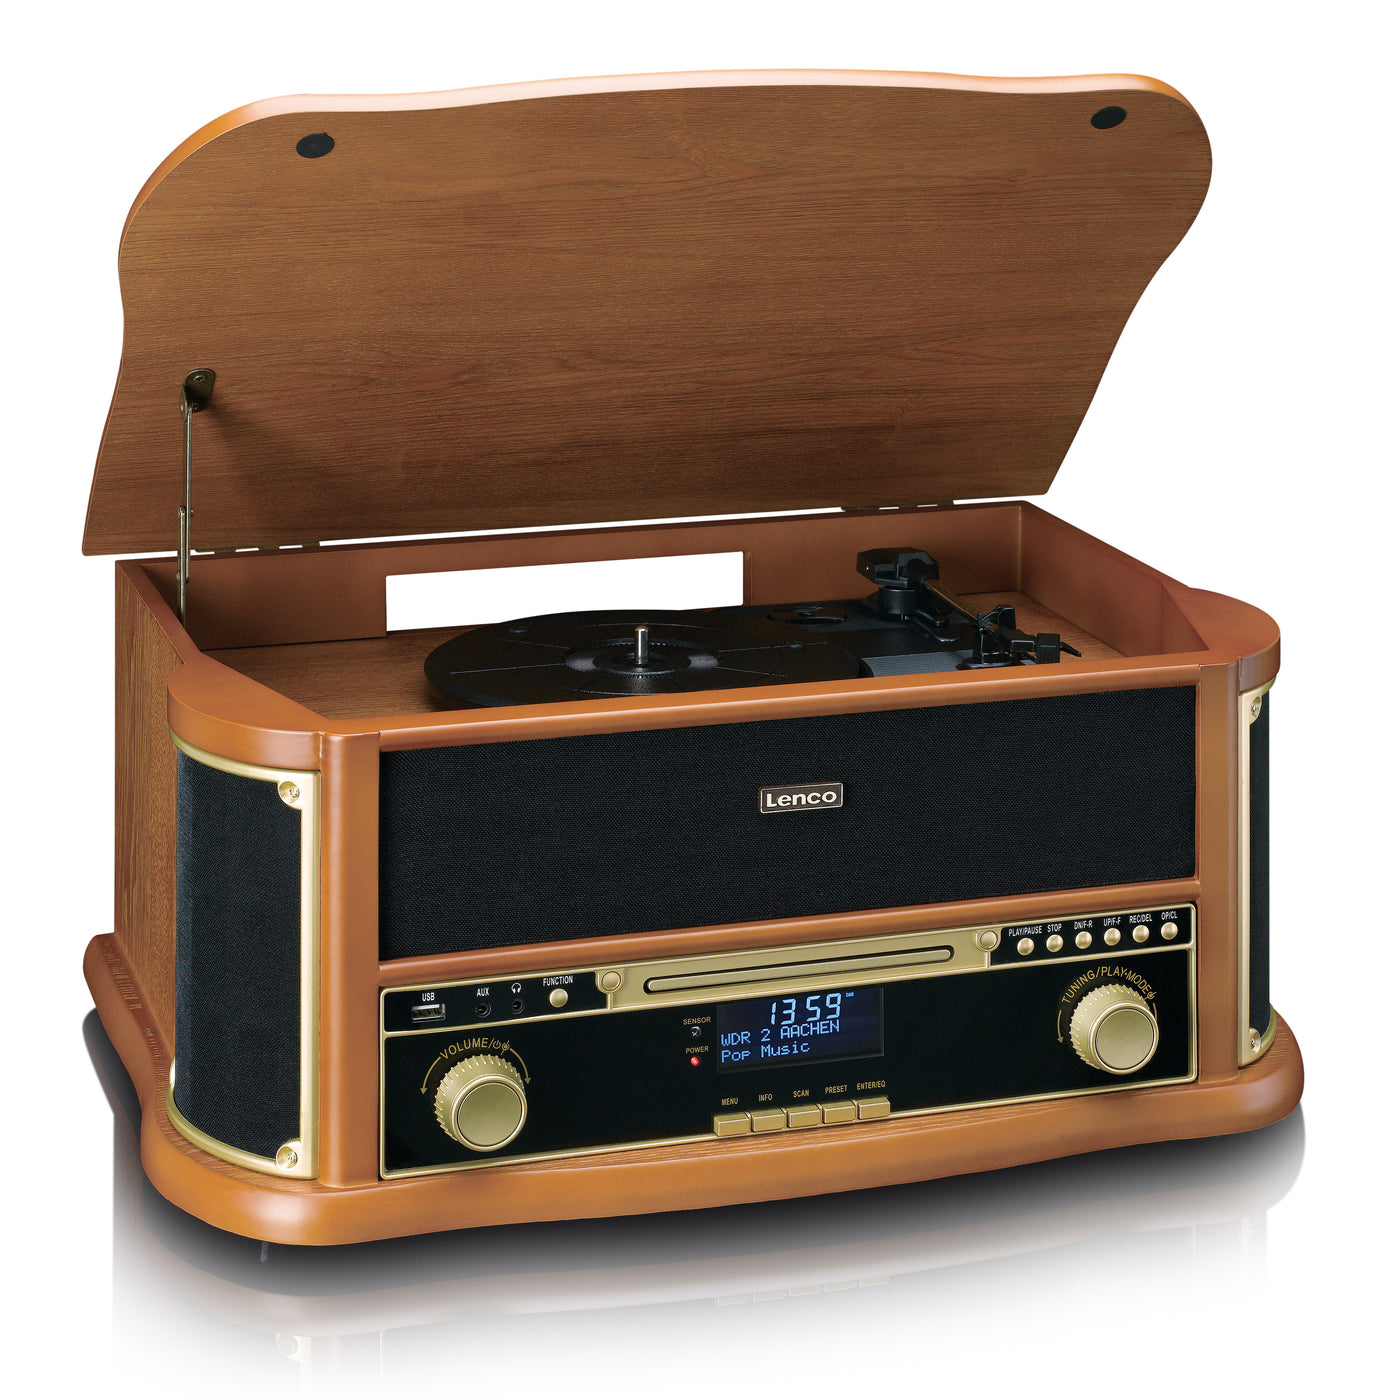 CLASSIC PHONO TCD-2571WD - Drewniany gramofon retro z Bluetooth®, radiem DAB+/FM, kodowaniem USB, odtwarzaczem CD, odtwarzaczem kasetowym i wbudowanymi głośnikami - Drewno